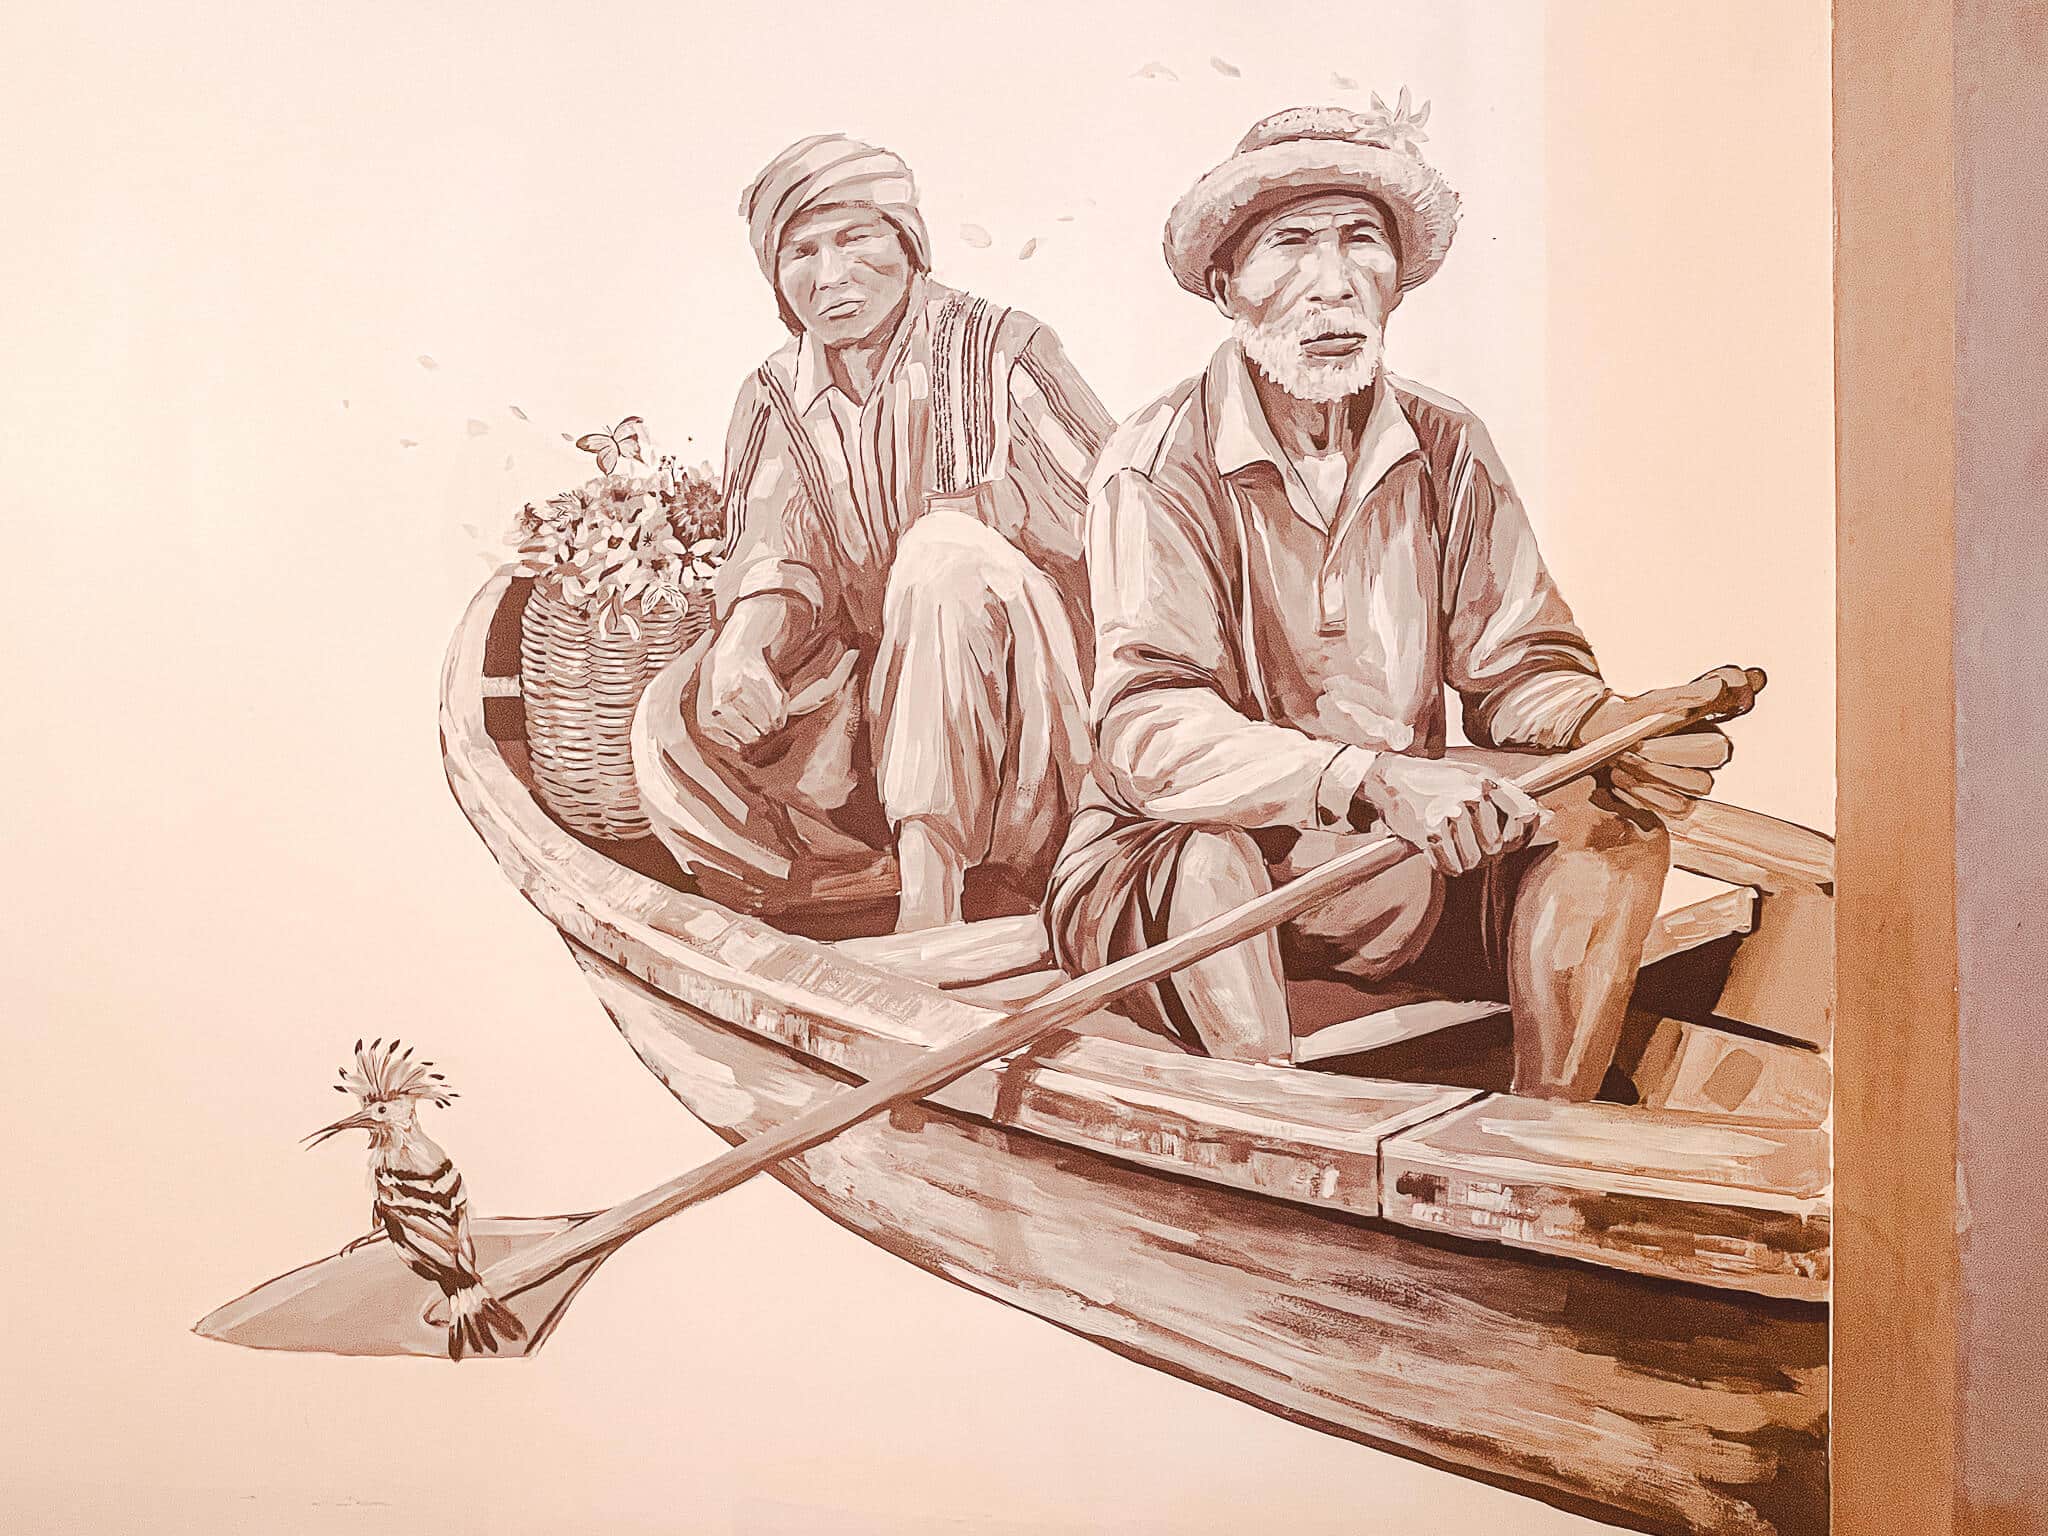 Ilustração na parede de duas pessoas em um barquinho a remo e um passarinho típico da Tailândia sentando na ponta do remo, quase na água.